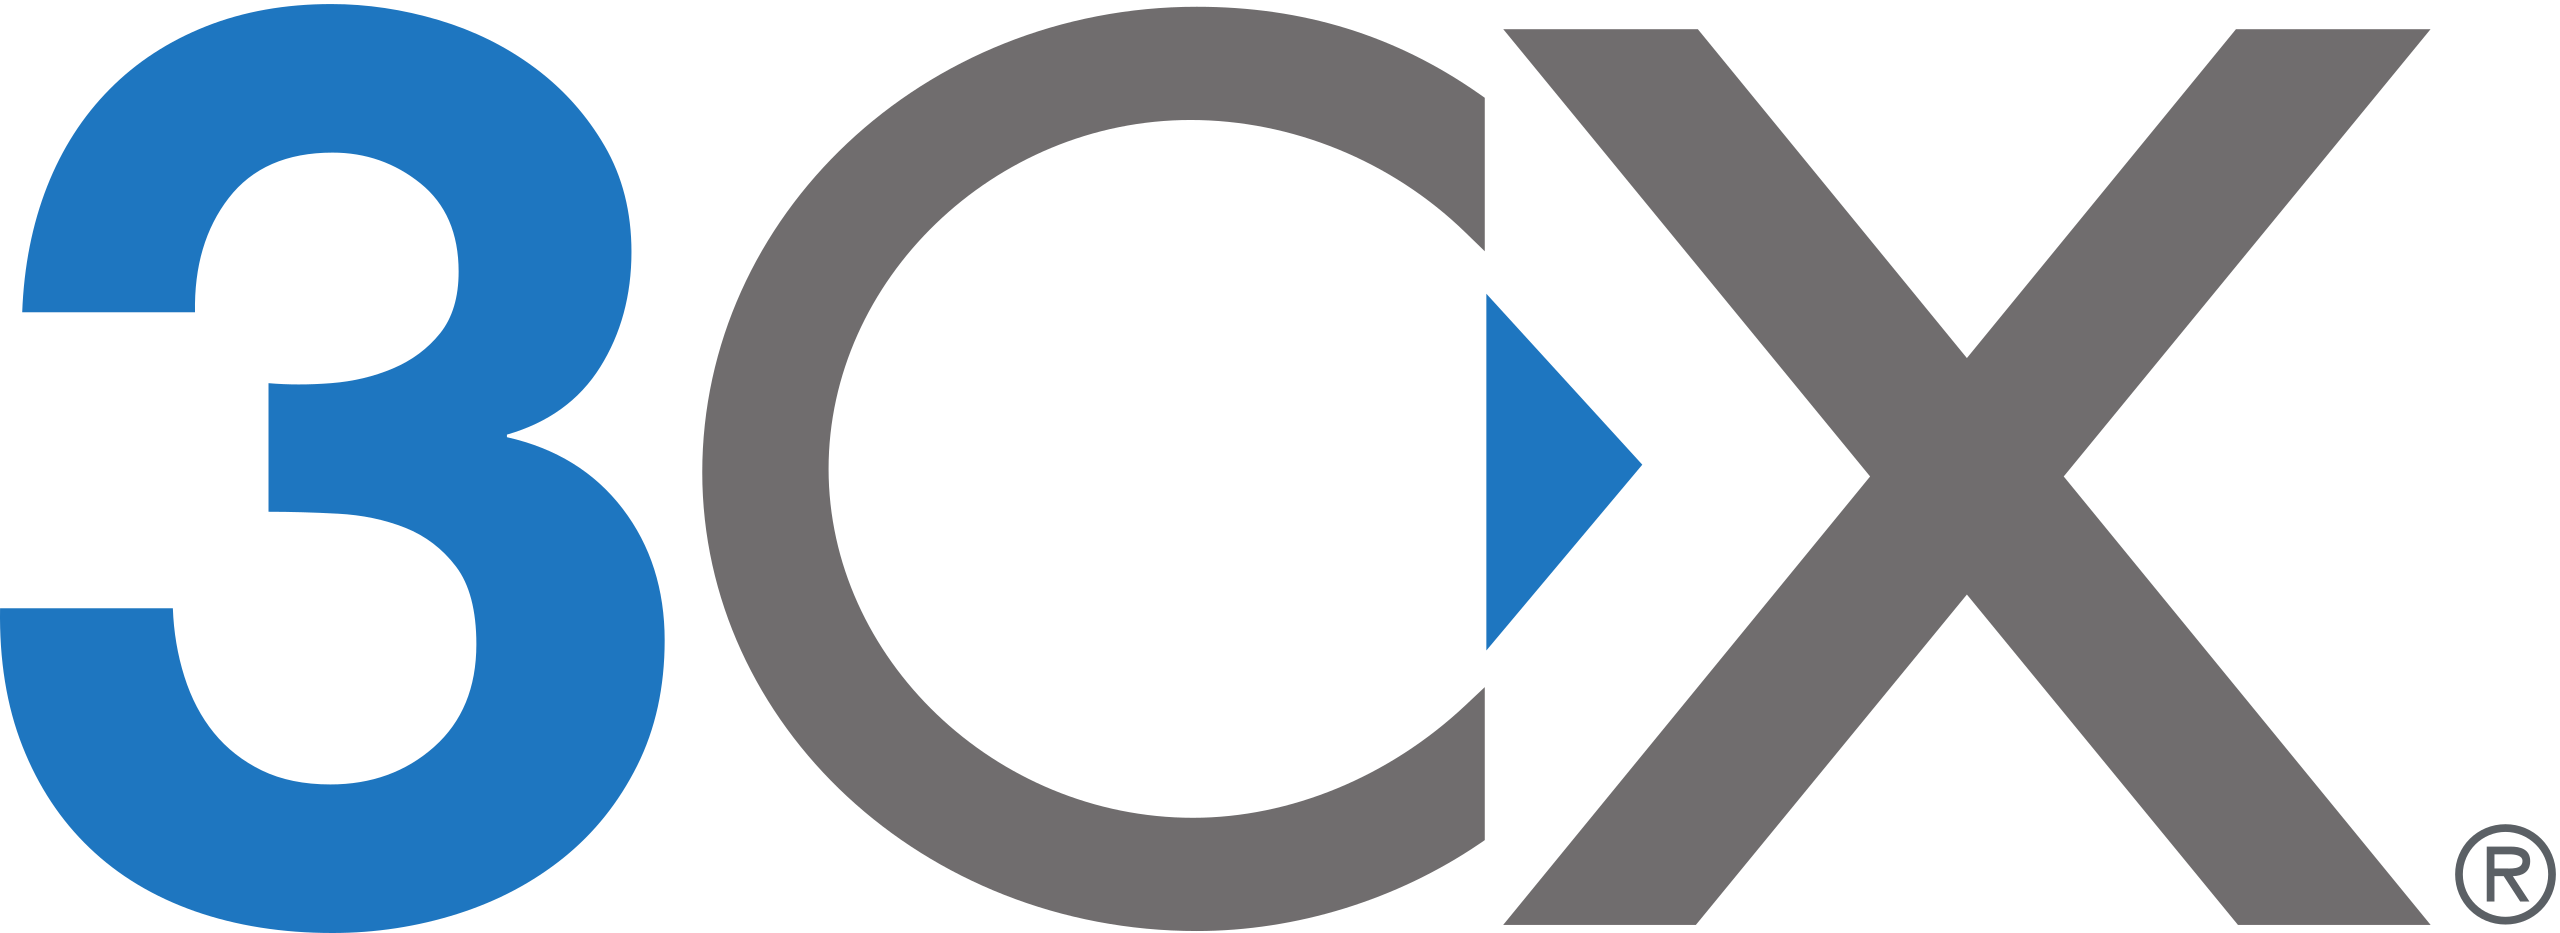 2560px-3CX_logo.svg